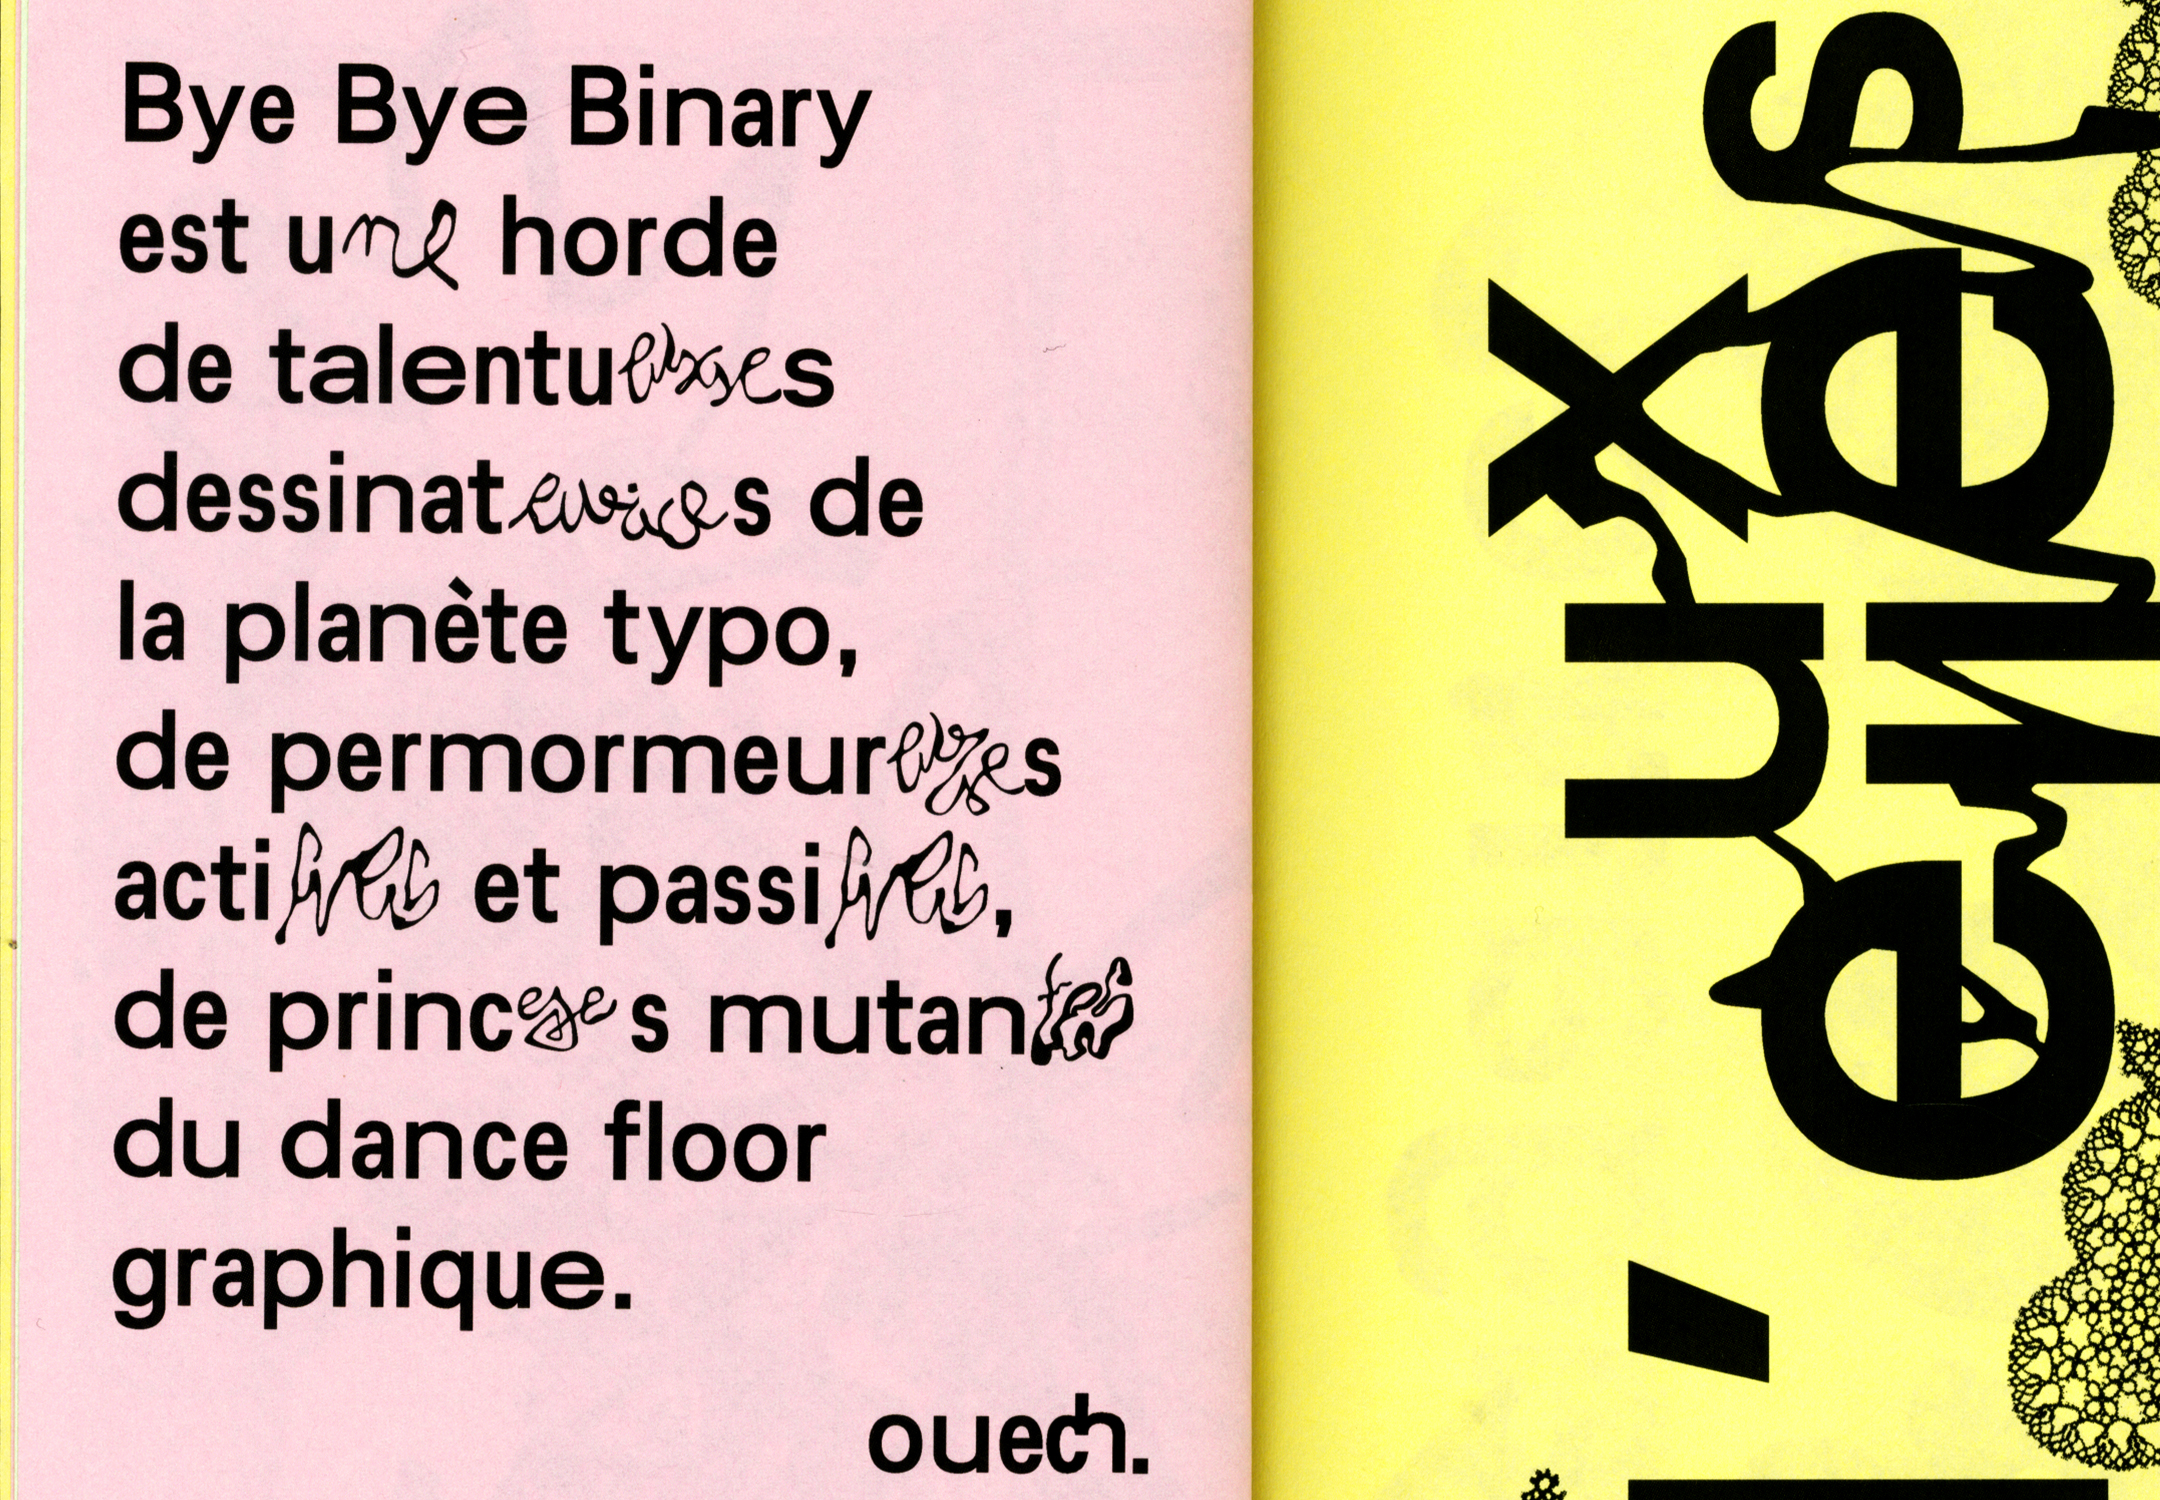 Gros plan sur un extrait de texte dans le fanzine qui présente Bye Bye Binary avec de nombreux glyphes.